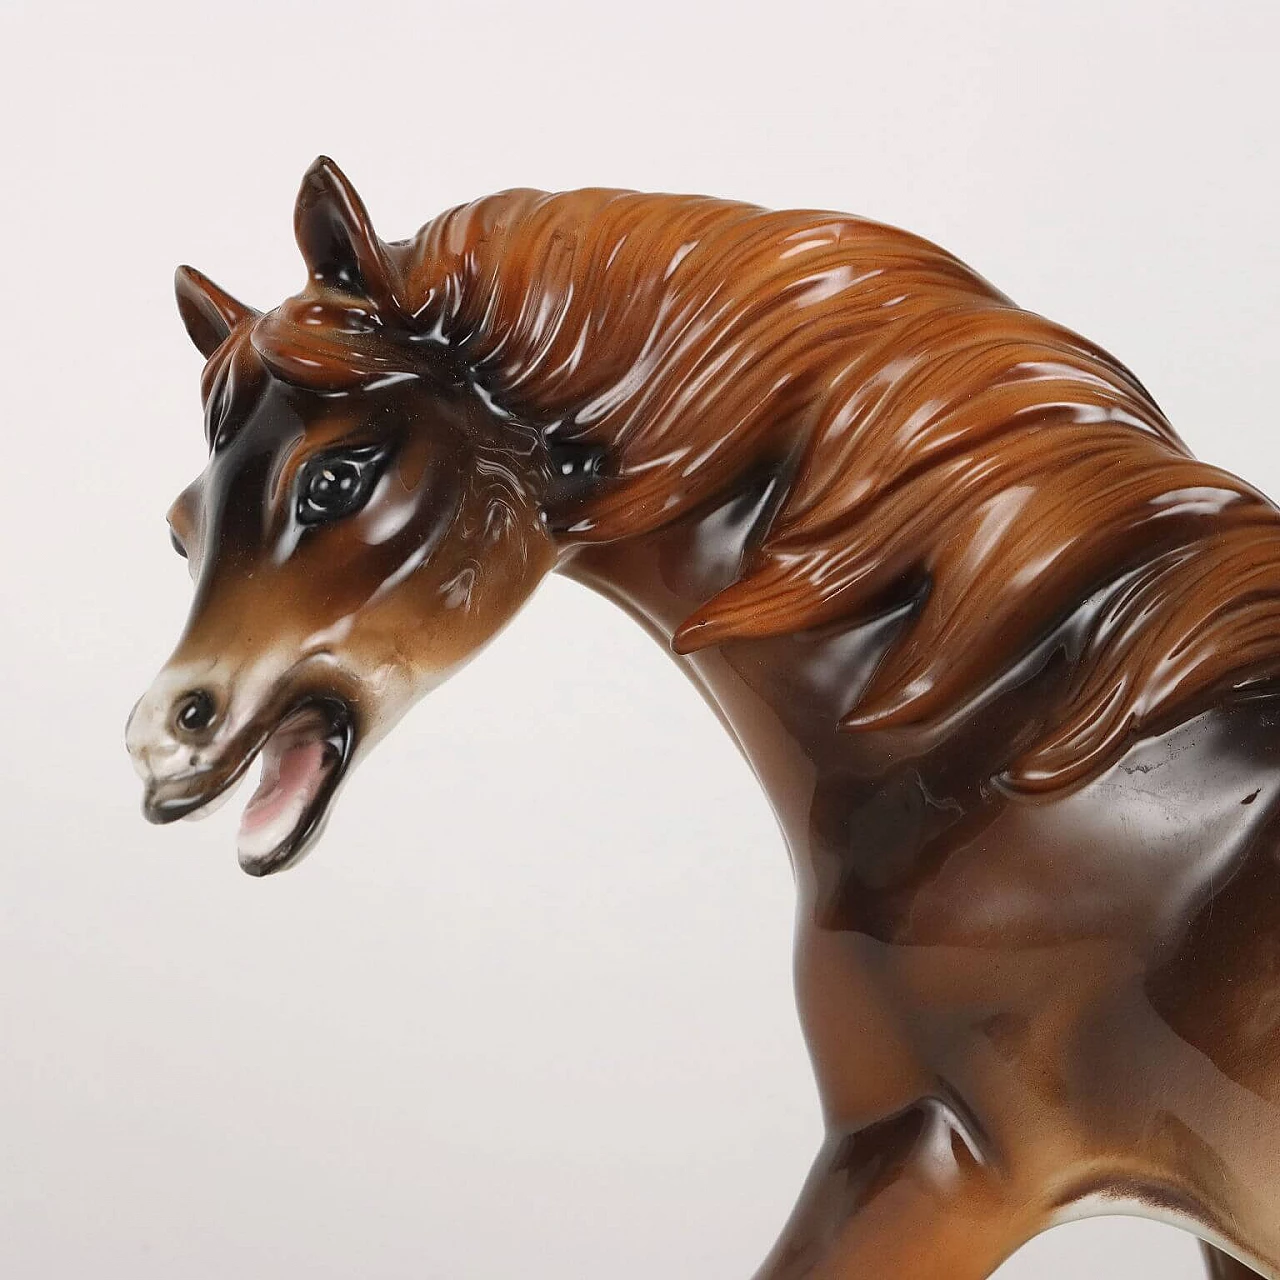 Ceramic horse sculpture by Antonio Ronzan 3